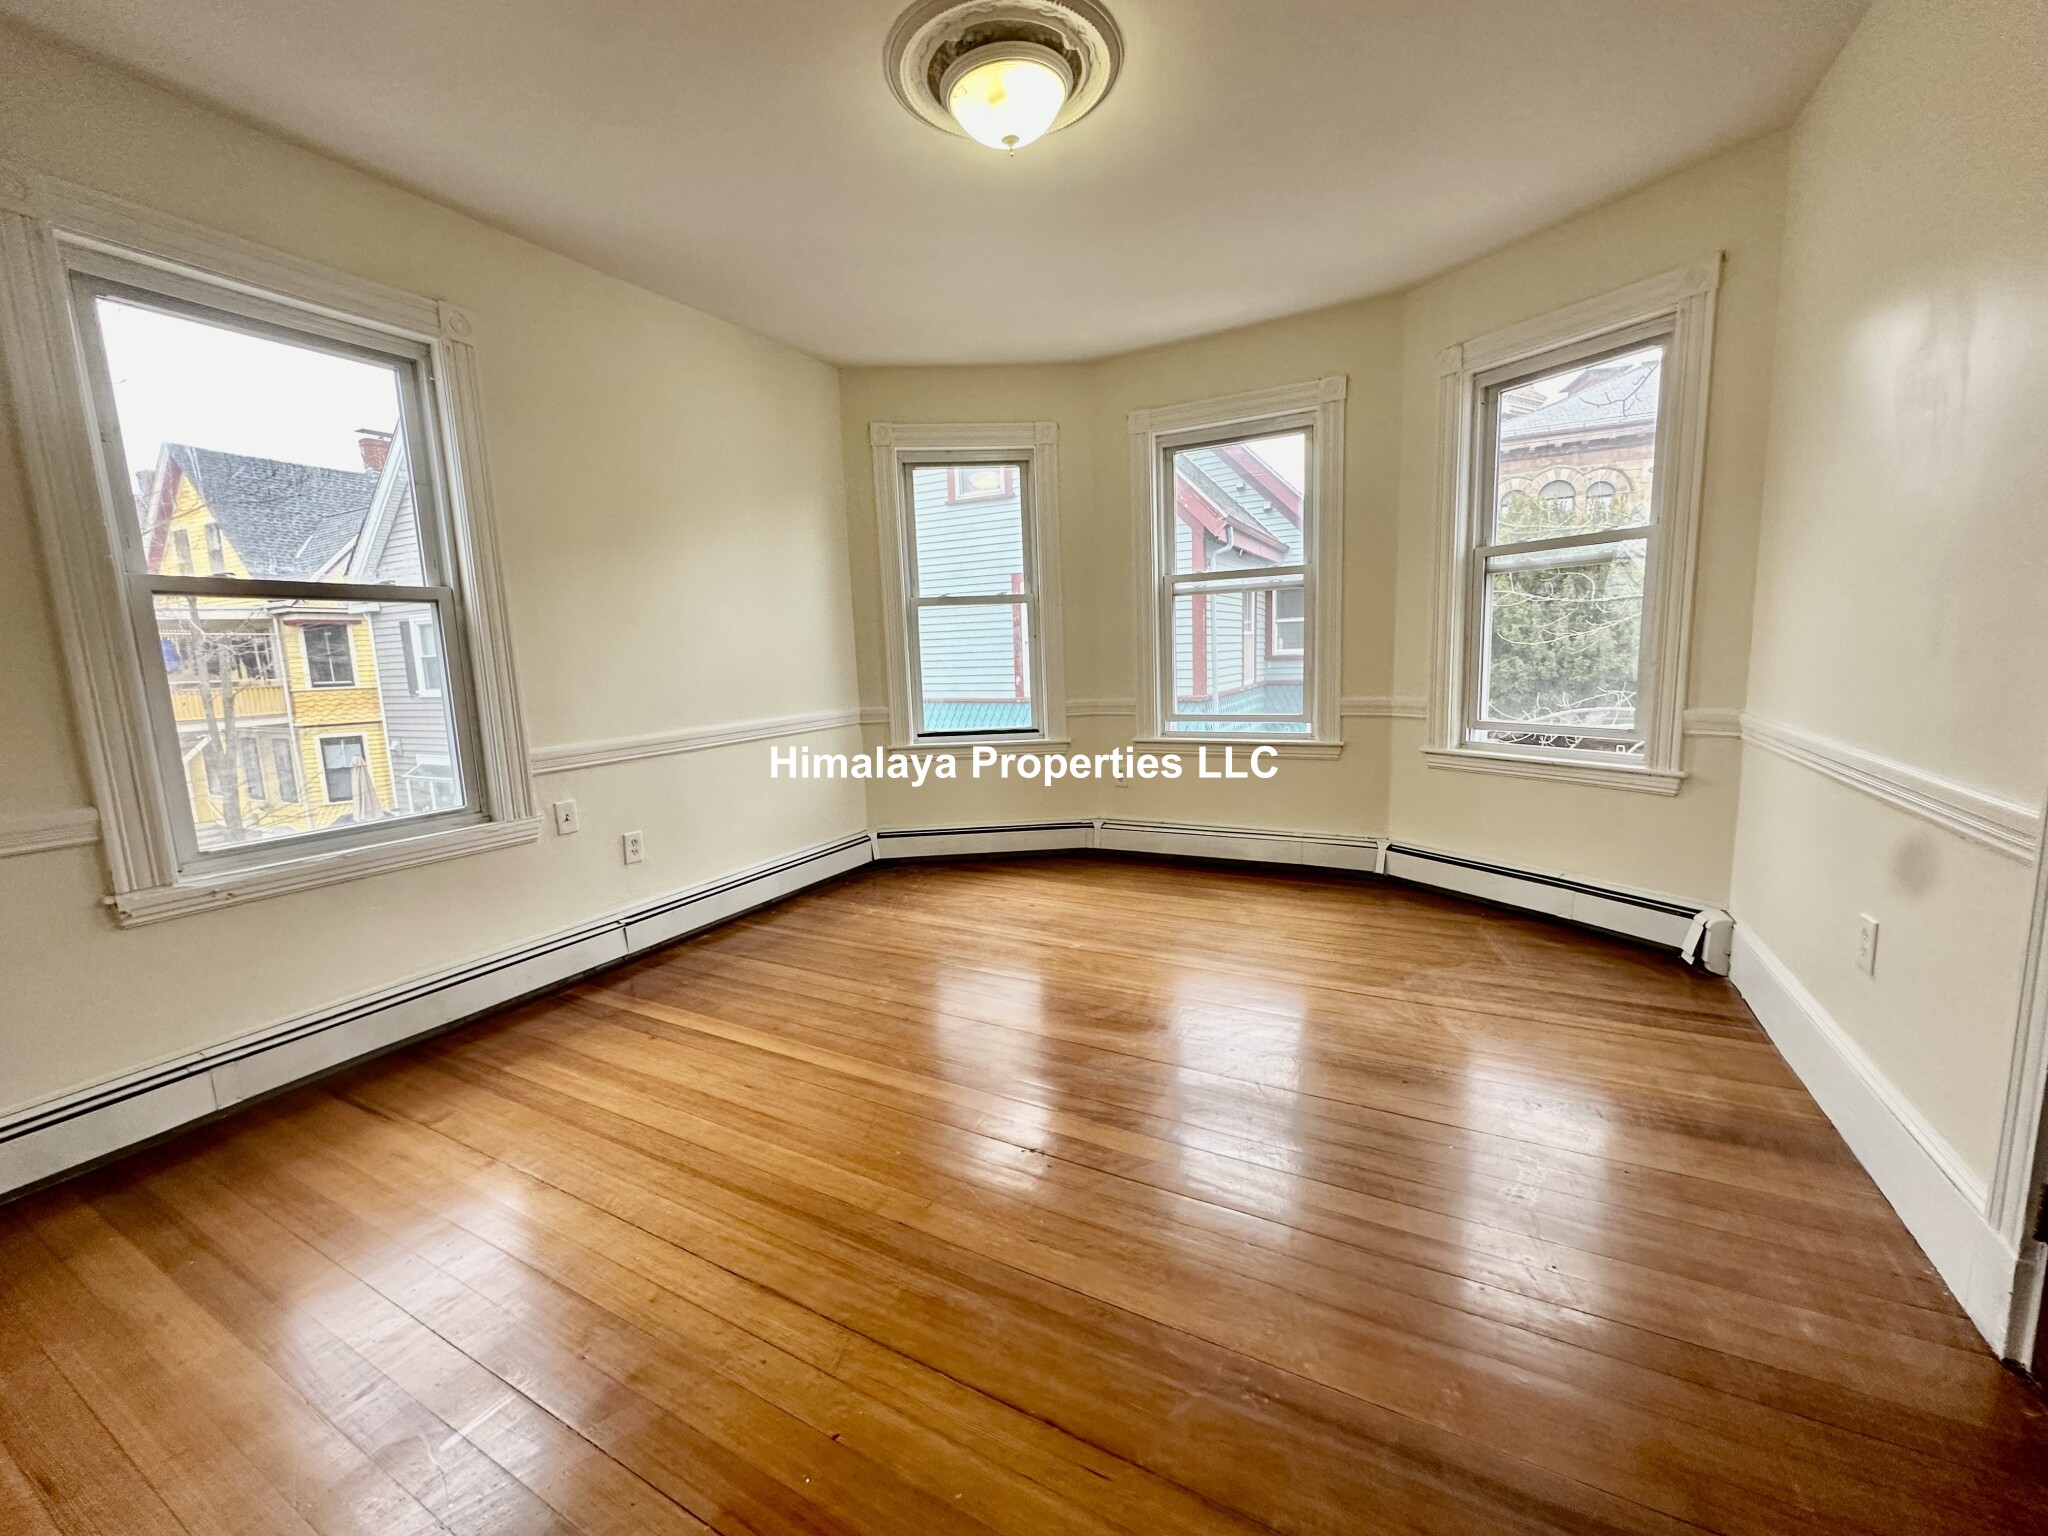 Photos of apartment on Creighton St.,Boston MA 02130